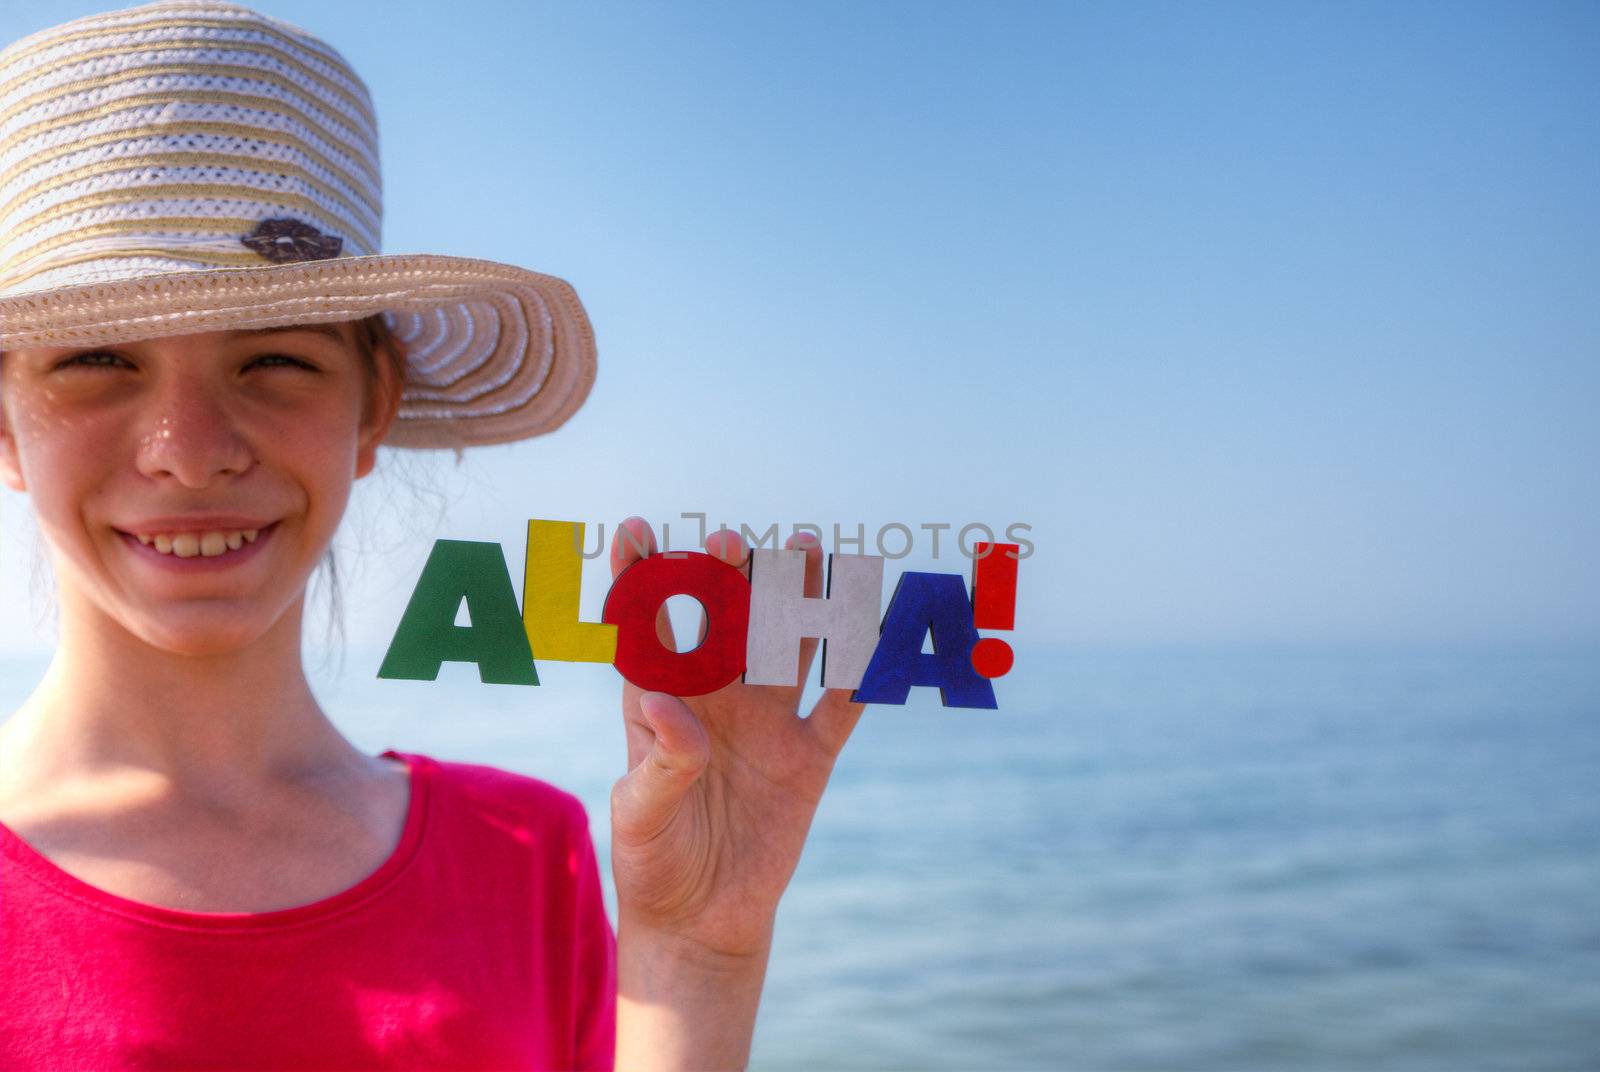 Teen girl at a beach holding word 'Aloha'